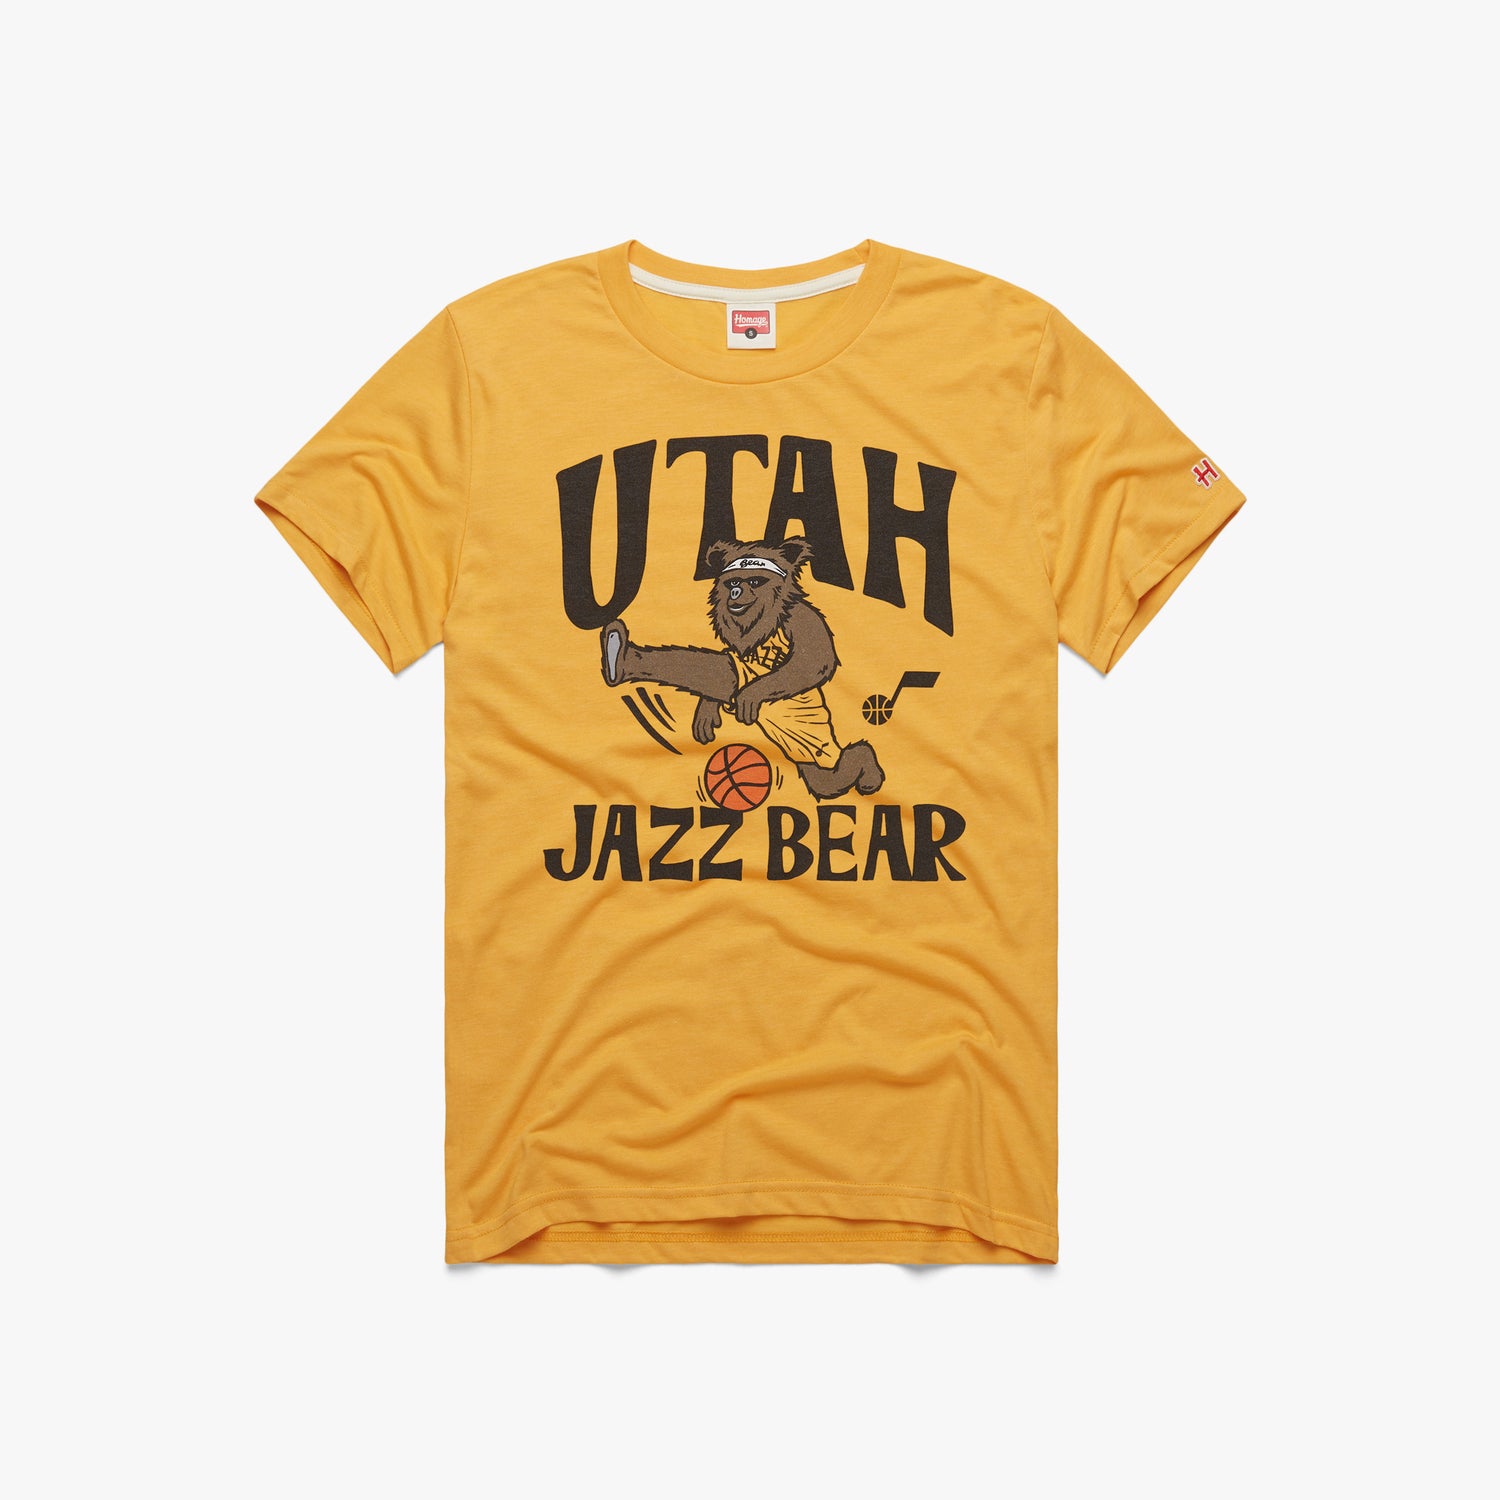 Utah Jazz The Jazz Bear